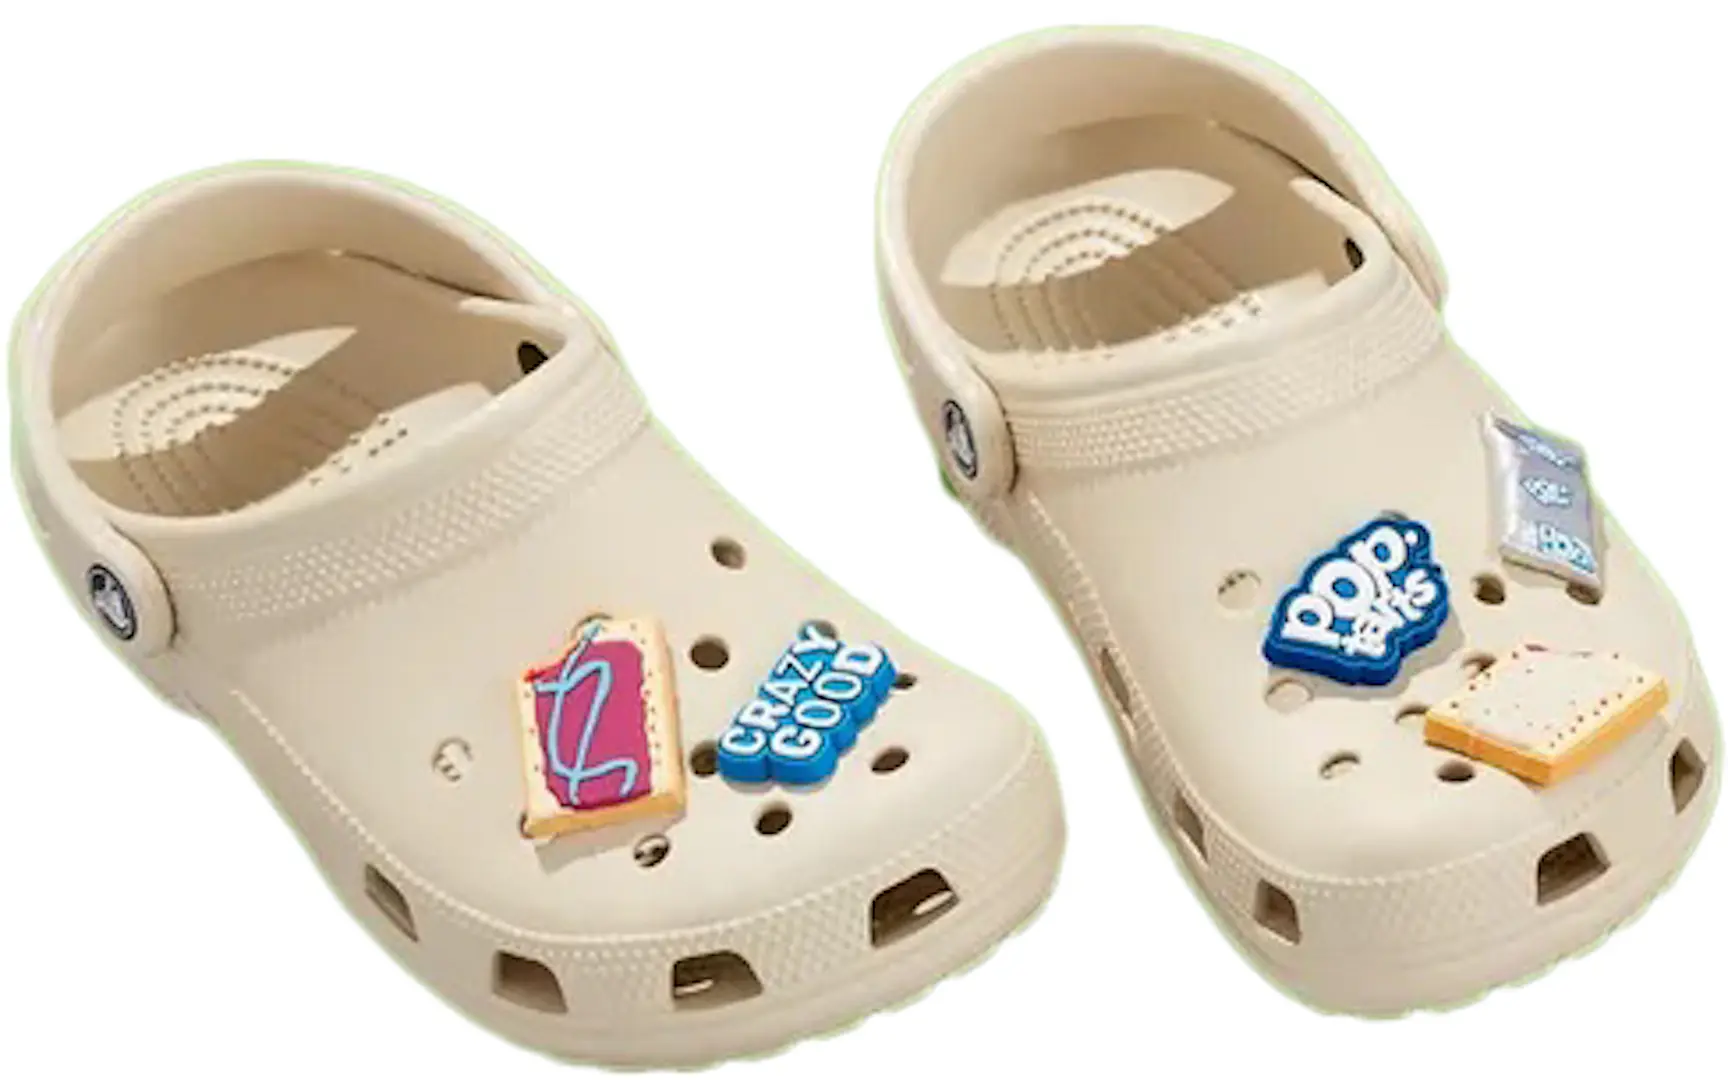 Crocs Classic Clog Pop-Tarts Croc-Tarts Men's - Sneakers - US